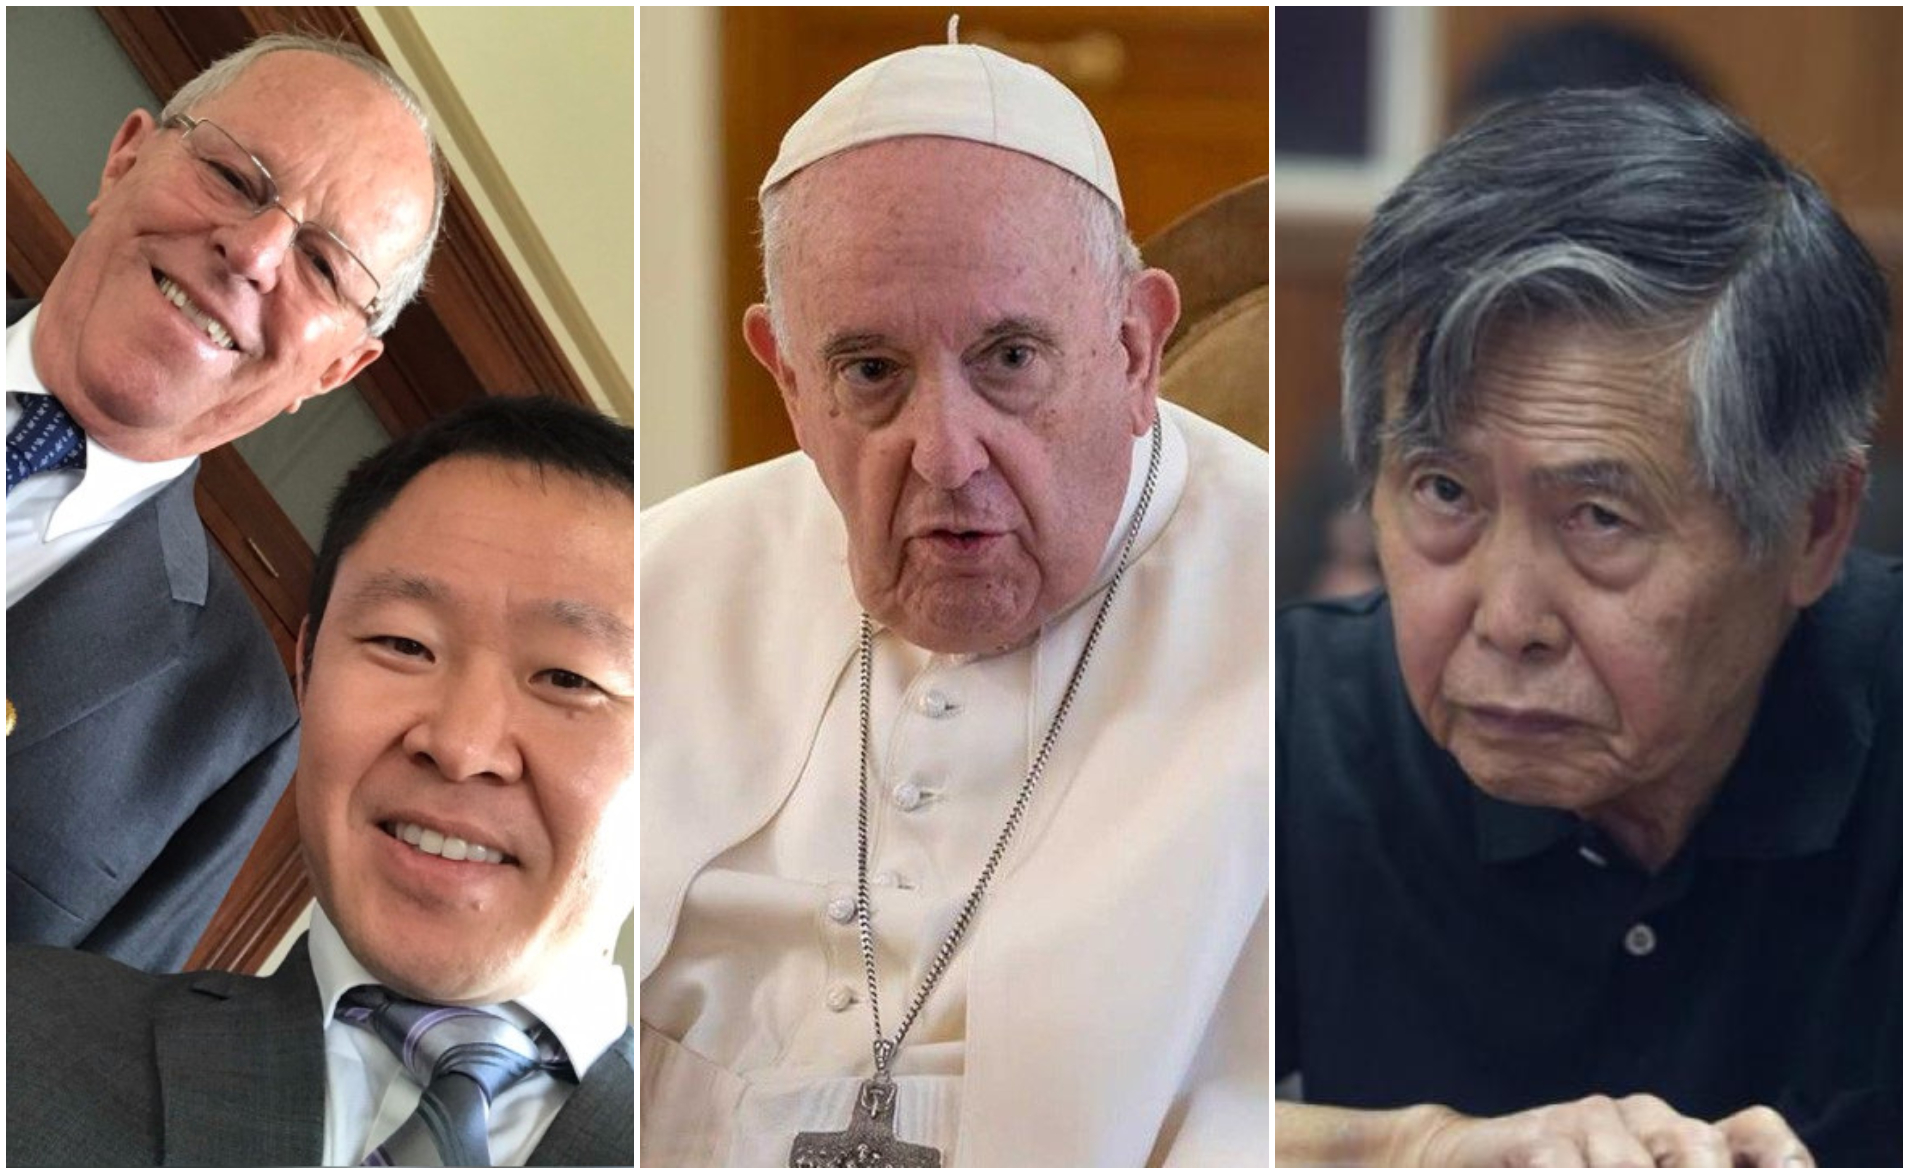 PPK habló con el Papa Francisco antes de indultar a Alberto Fujimori: “Me dijo ‘soltalo, che’”  